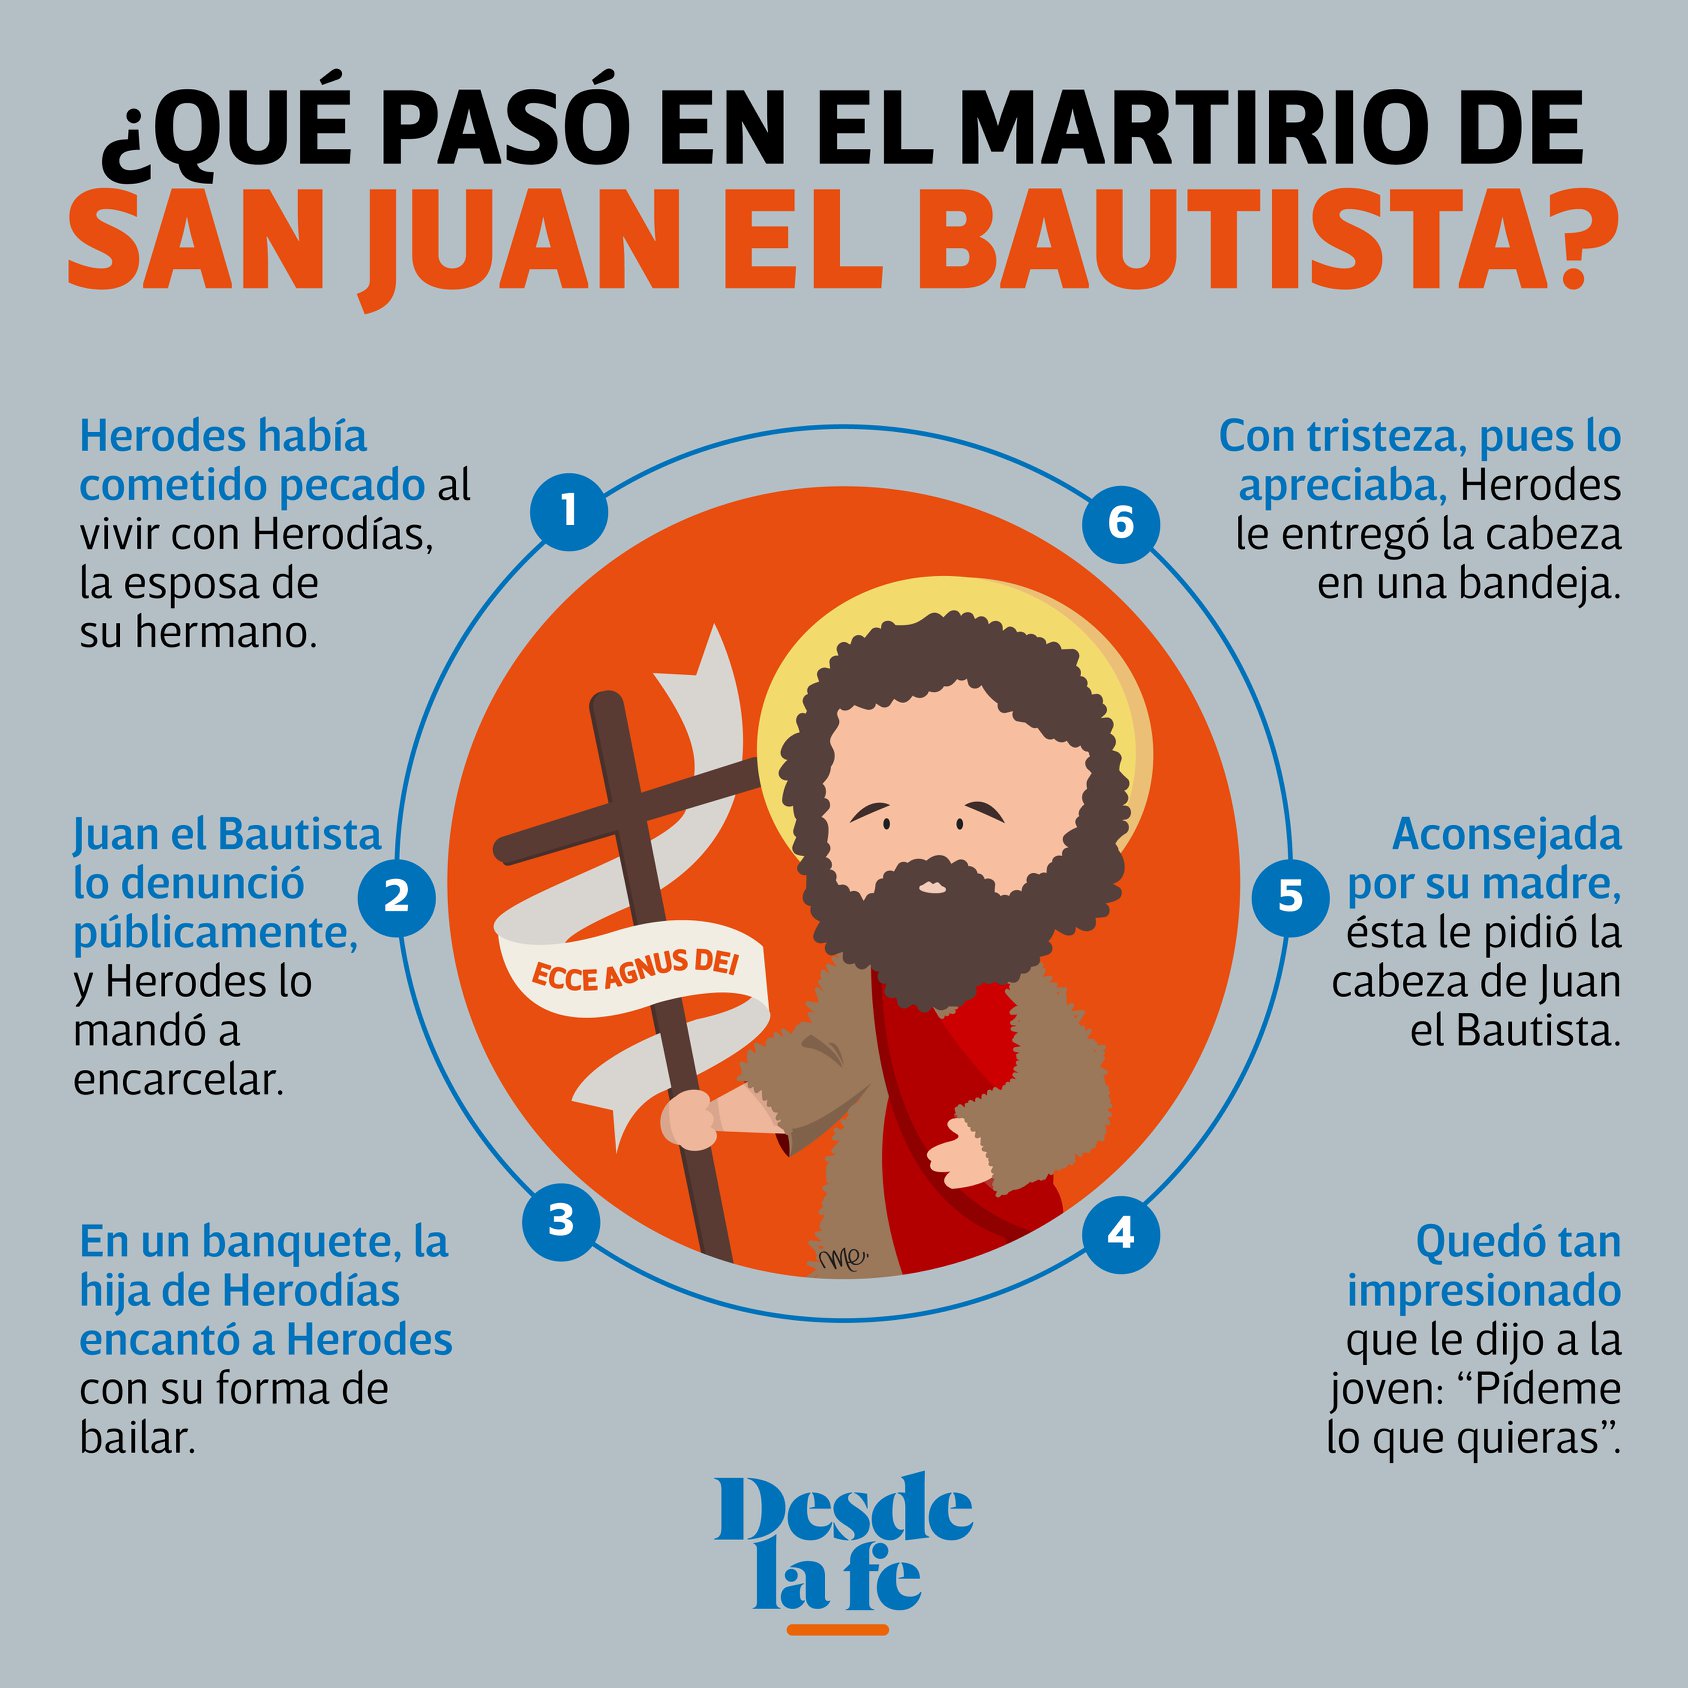 ¿Qué sucedió en el martirio de San Juan Bautista?